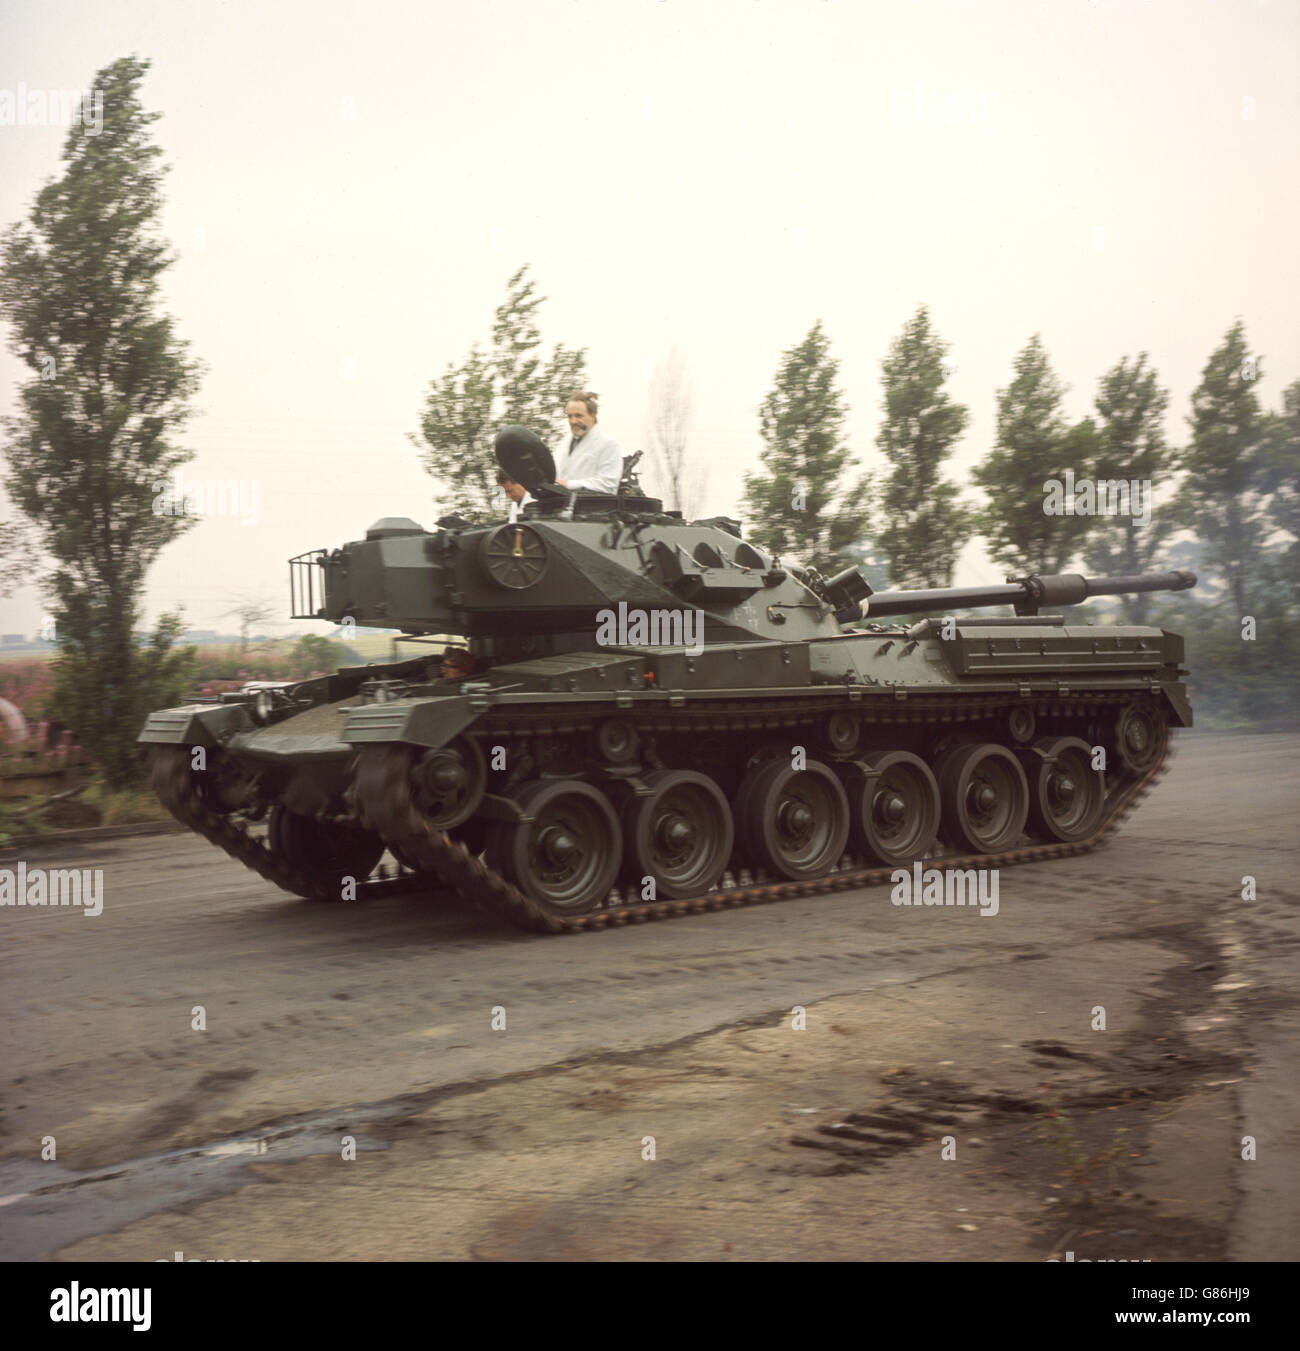 Chieftain, der neueste Panzer der britischen Armee, der 50 Tonnen wiegt und eine 120-mm-Kanone als Hauptbewaffnung hat. Stockfoto